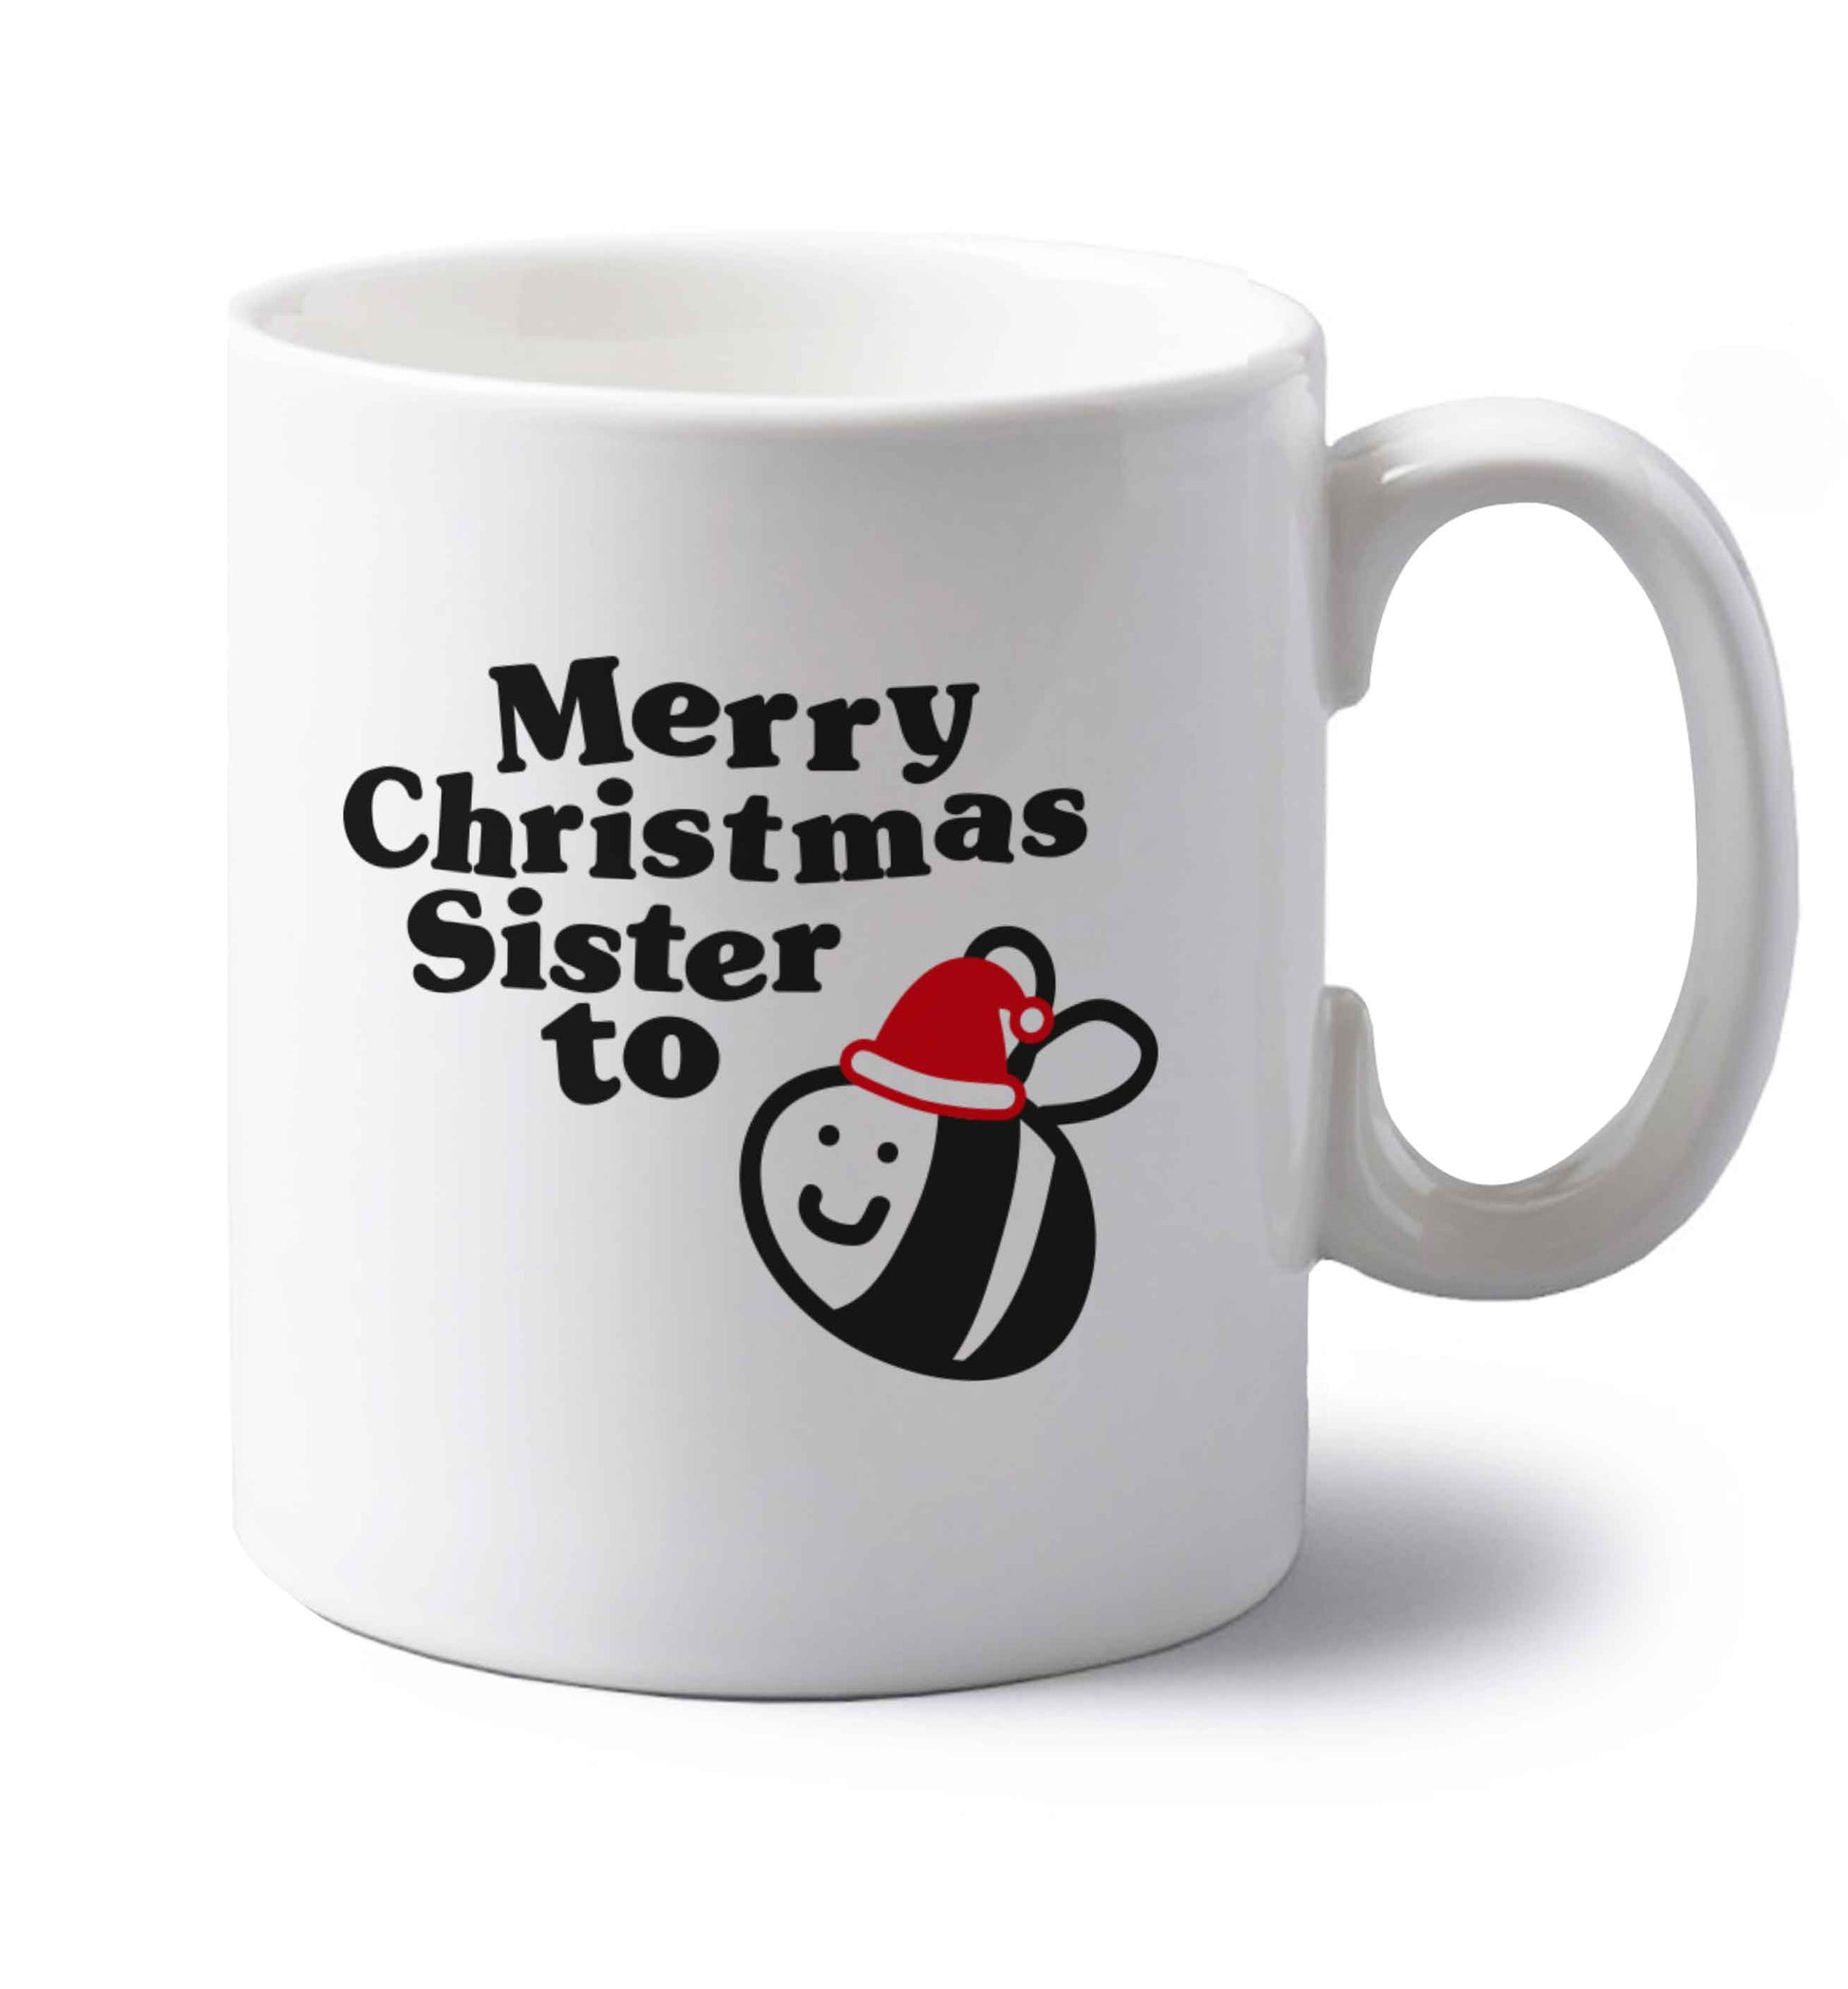 Merry Christmas sister to be left handed white ceramic mug 